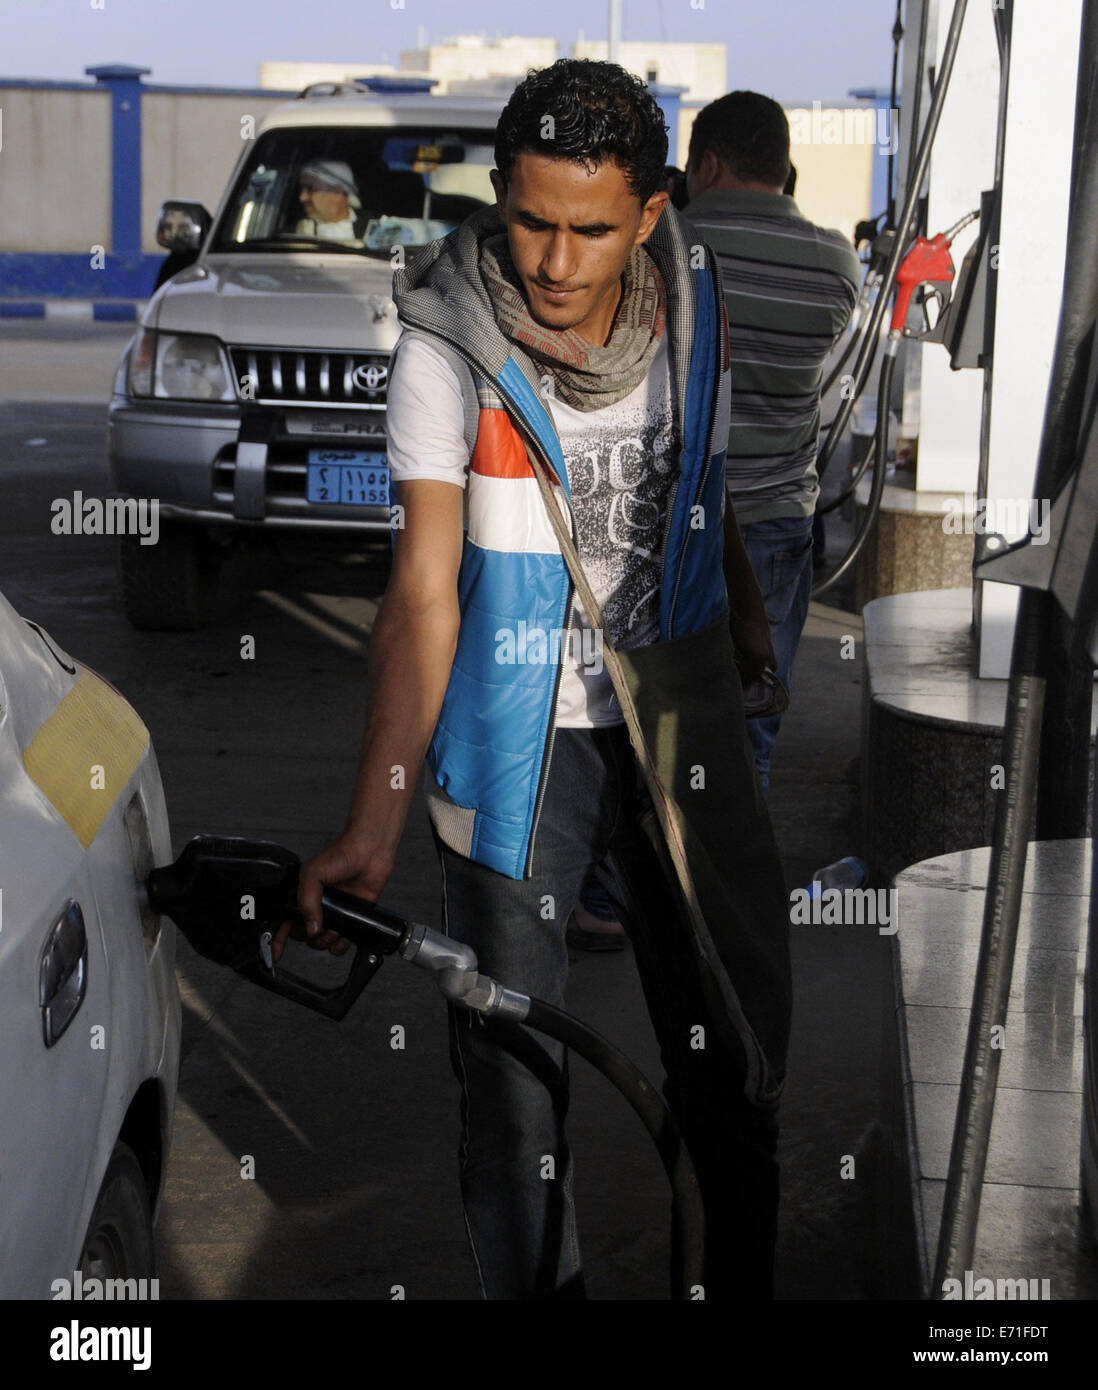 Sanaa, Jemen. 3. Sep, 2014. Ein Arbeiter tankt ein Auto an einer Tankstelle in Sanaa, Jemen, am 3. September 2014. Die jemenitische Governemnt beschlossen Senkung der Treibstoffpreise um 25 jemenitische Rial (0,12 US-Dollar) pro Liter, die Massenproteste zu beschwichtigen, ausgelöst durch einen steilen Anstieg der Treibstoffpreise Ende Juli. © Mohammed Mohammed/Xinhua/Alamy Live-Nachrichten Stockfoto